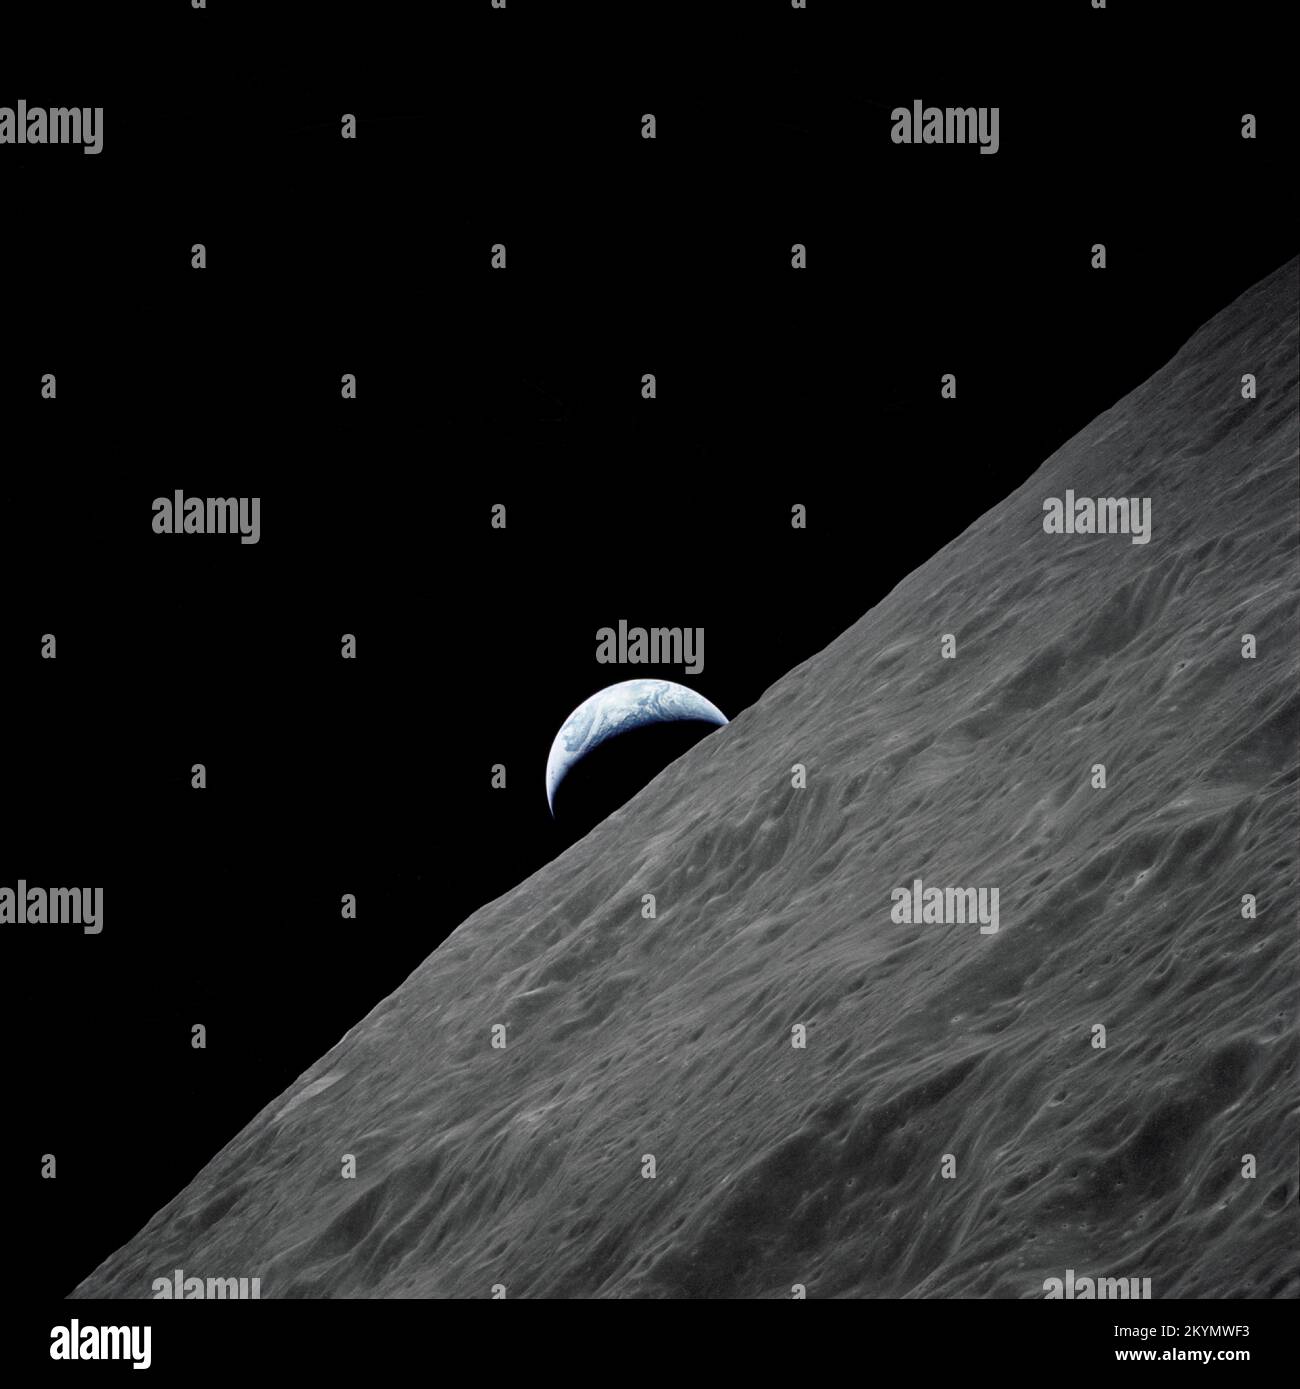 Le croissant de la Terre s'élève au-dessus de l'horizon lunaire dans cette photo spectaculaire prise de l'engin spatial Apollo 17 en orbite lunaire lors de la mission d'atterrissage lunaire finale du programme Apollo. Banque D'Images